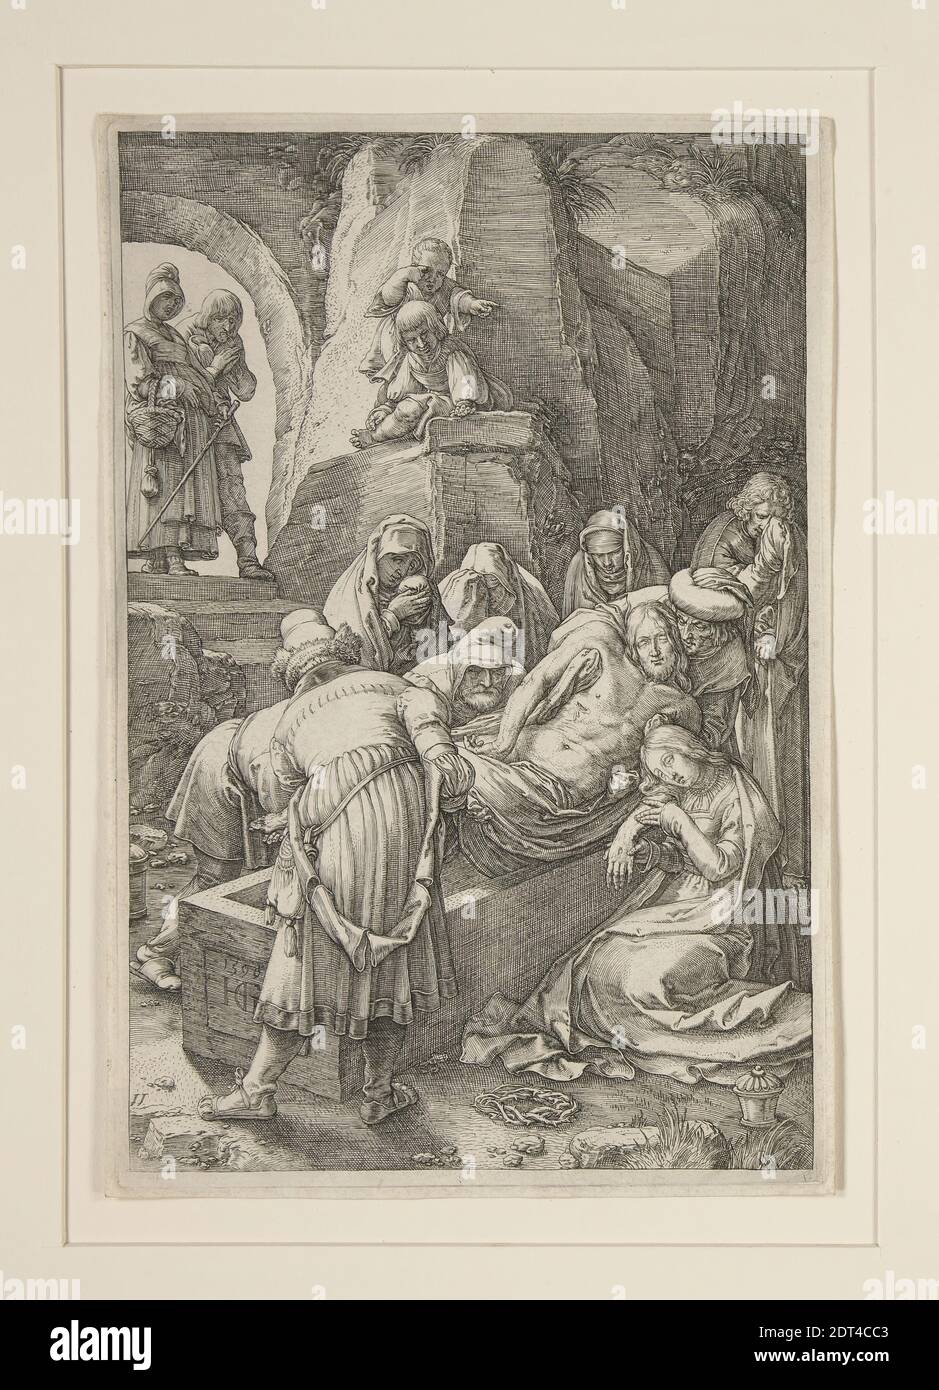 Artista: Hendrick Goltzius, olandese, 1558–1617, sepoltura di Cristo (l'Entombment), dalla Passione, n° 11 in una serie di 12 incisioni, incisione, 20.3 × 13.4 cm (8 × 5 1/4 in.), Made in the Netherlands, Dutch, XVI secolo, opere su carta - stampe Foto Stock